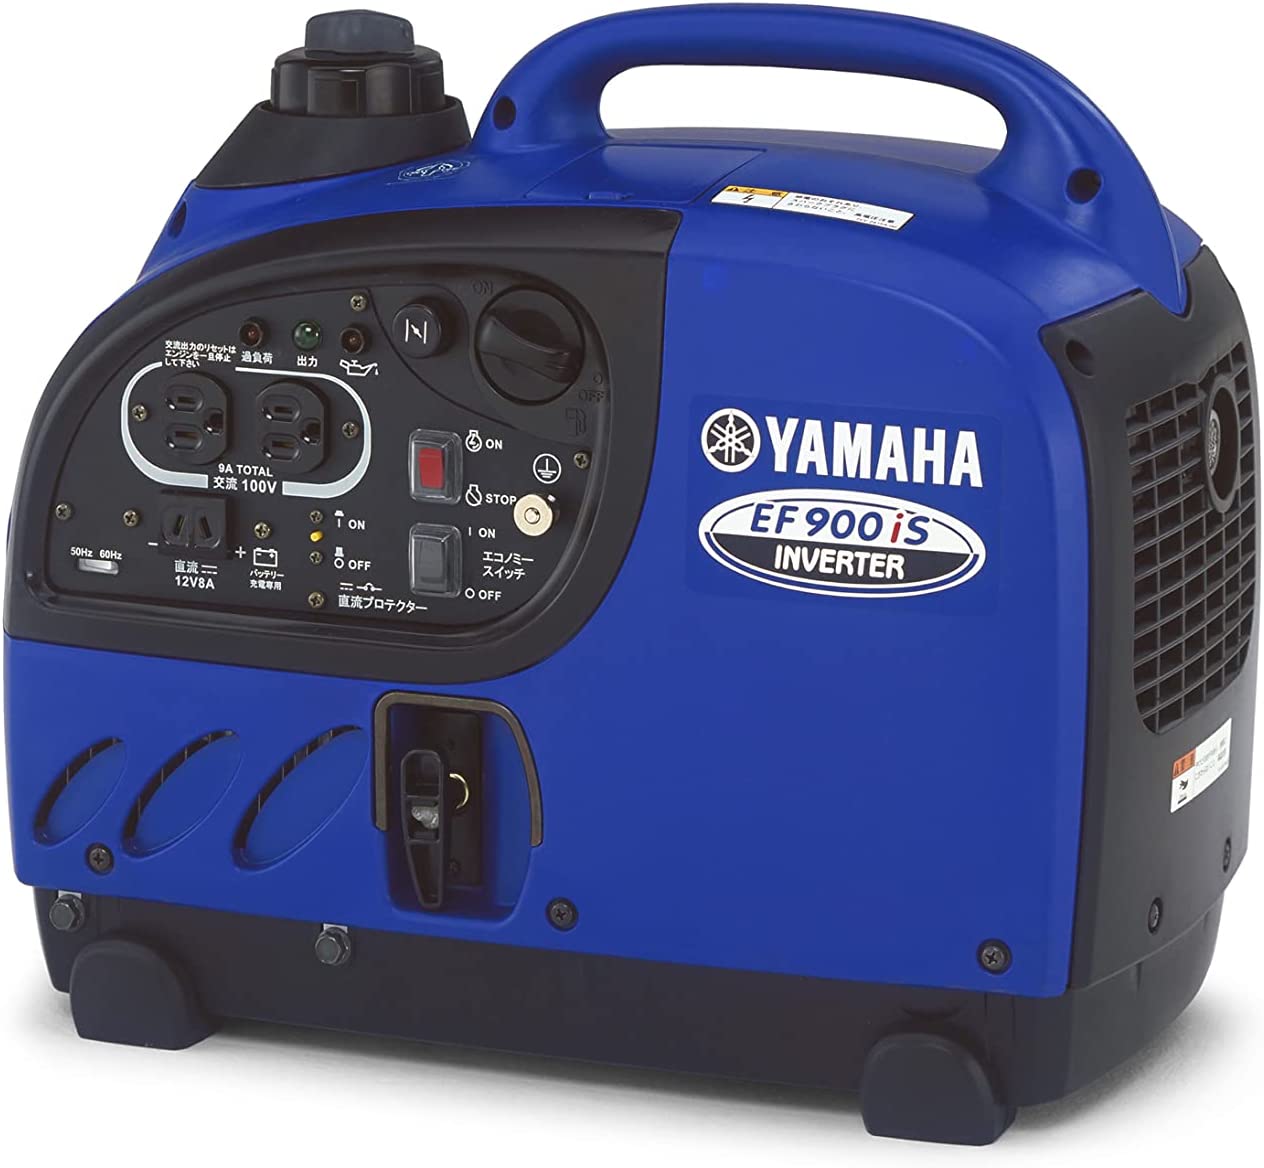 ヤマハ(YAMAHA) 防音型インバータ発電機 EF900iS 非常 ポータブル発電機 家庭用 小型 エンジン コンパクト 軽量設計 防音型 非常用 防災 アウトドア キャンプ